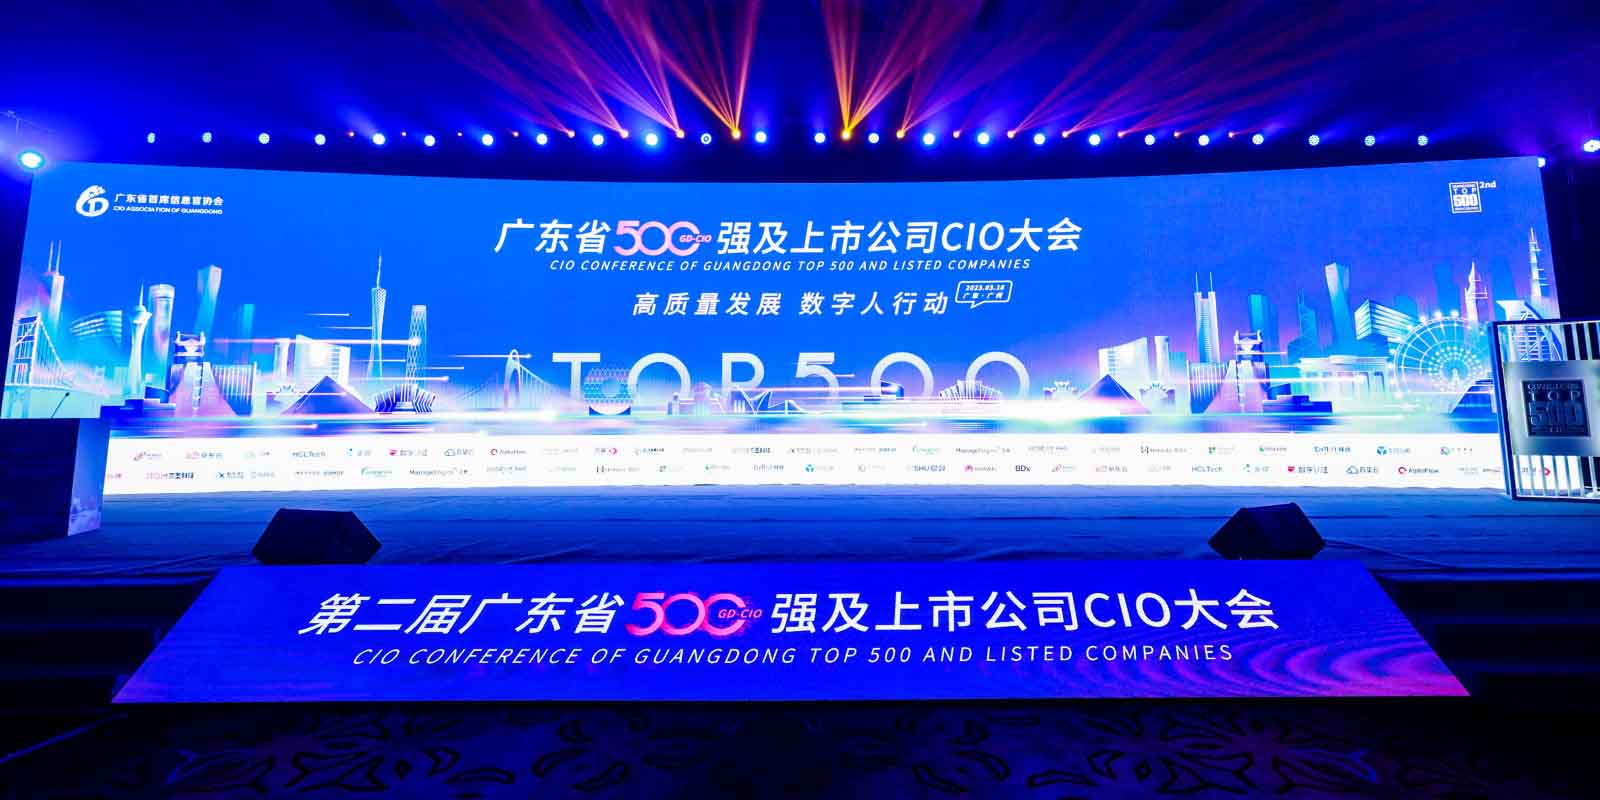 沙巴足球科技受邀出席广东省500强及上市公司CIO大会，获评“CIO优选数字化服务商”